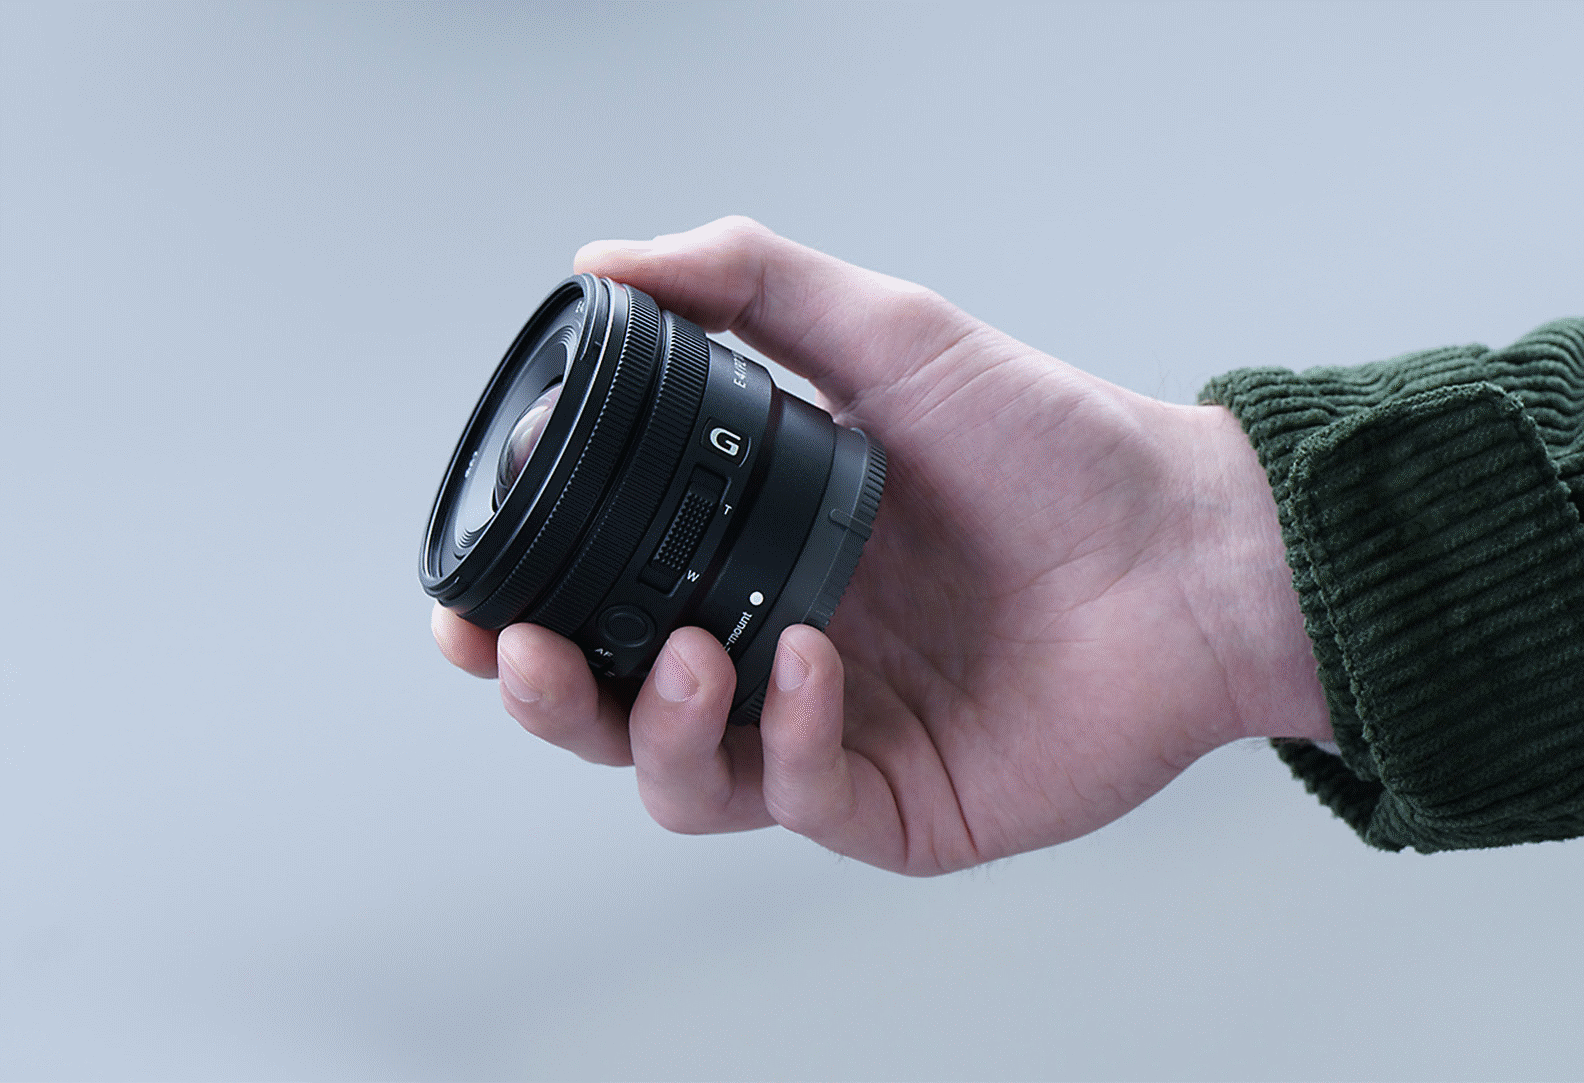 Bilde av en person som holder i E PZ 10-20mm F4 G, og som viser at objektivet er lite nok til å få plass i hånden